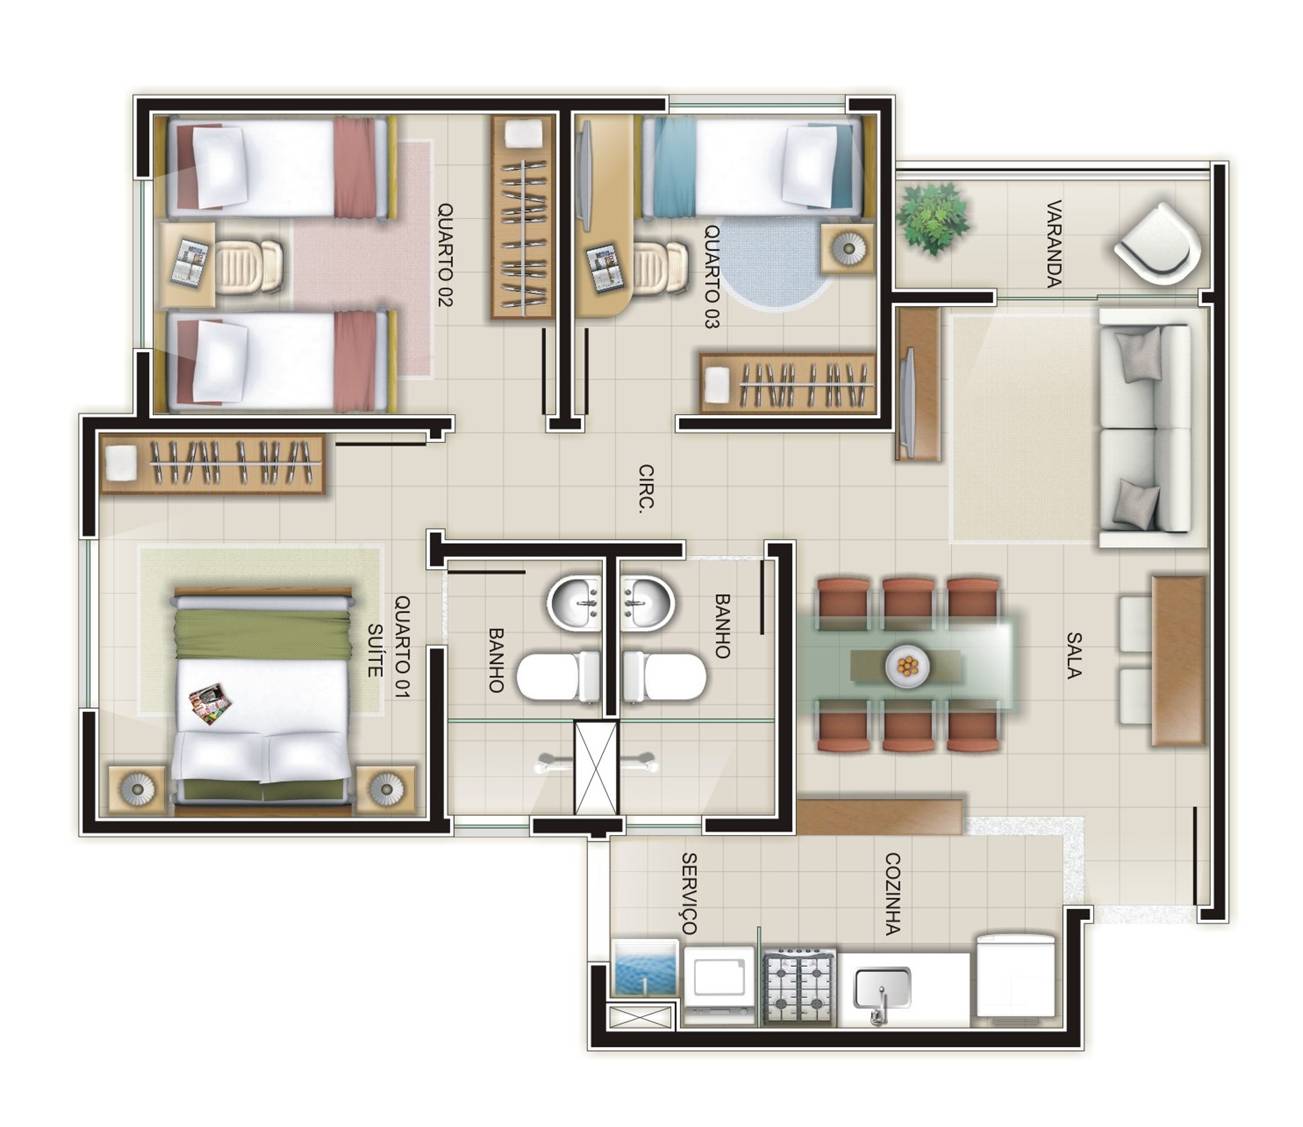 Plantas de apartamentos com 2 quartos | Decorando Casas